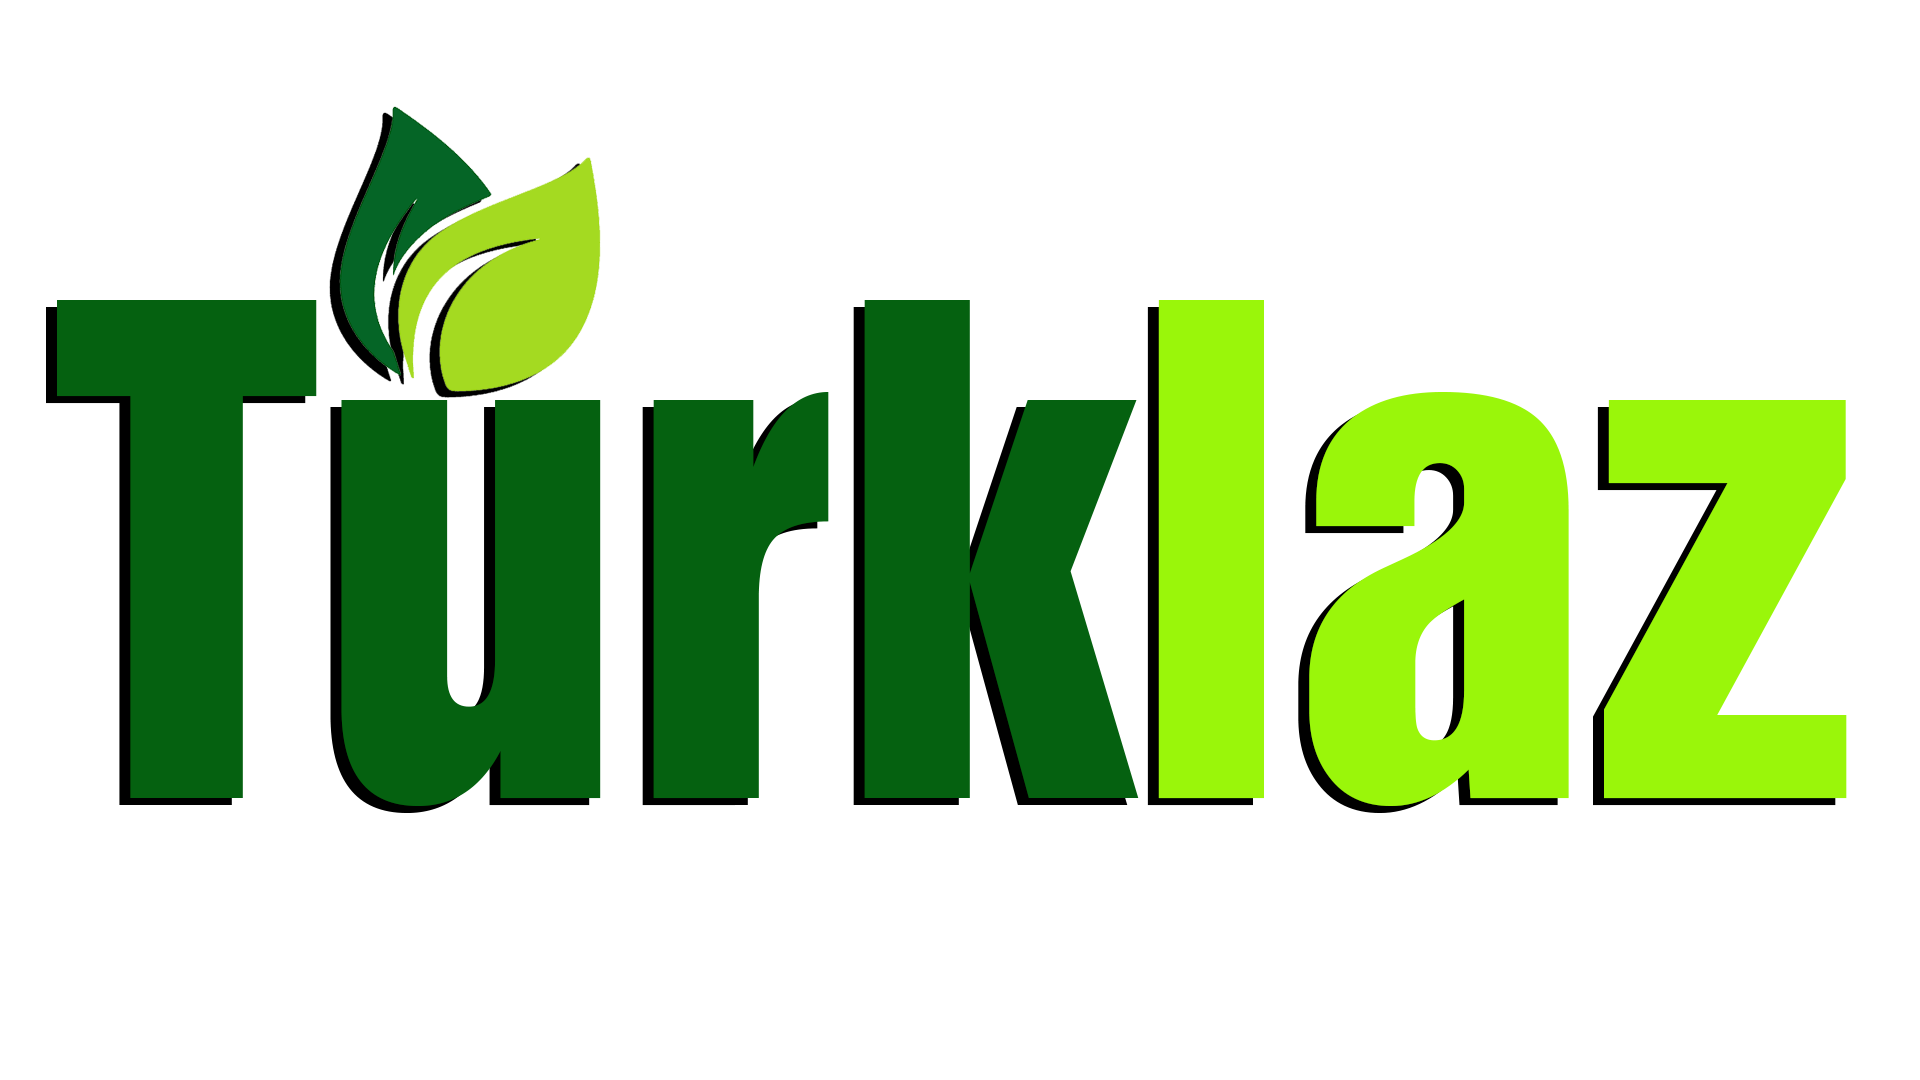 www.turklaz.com